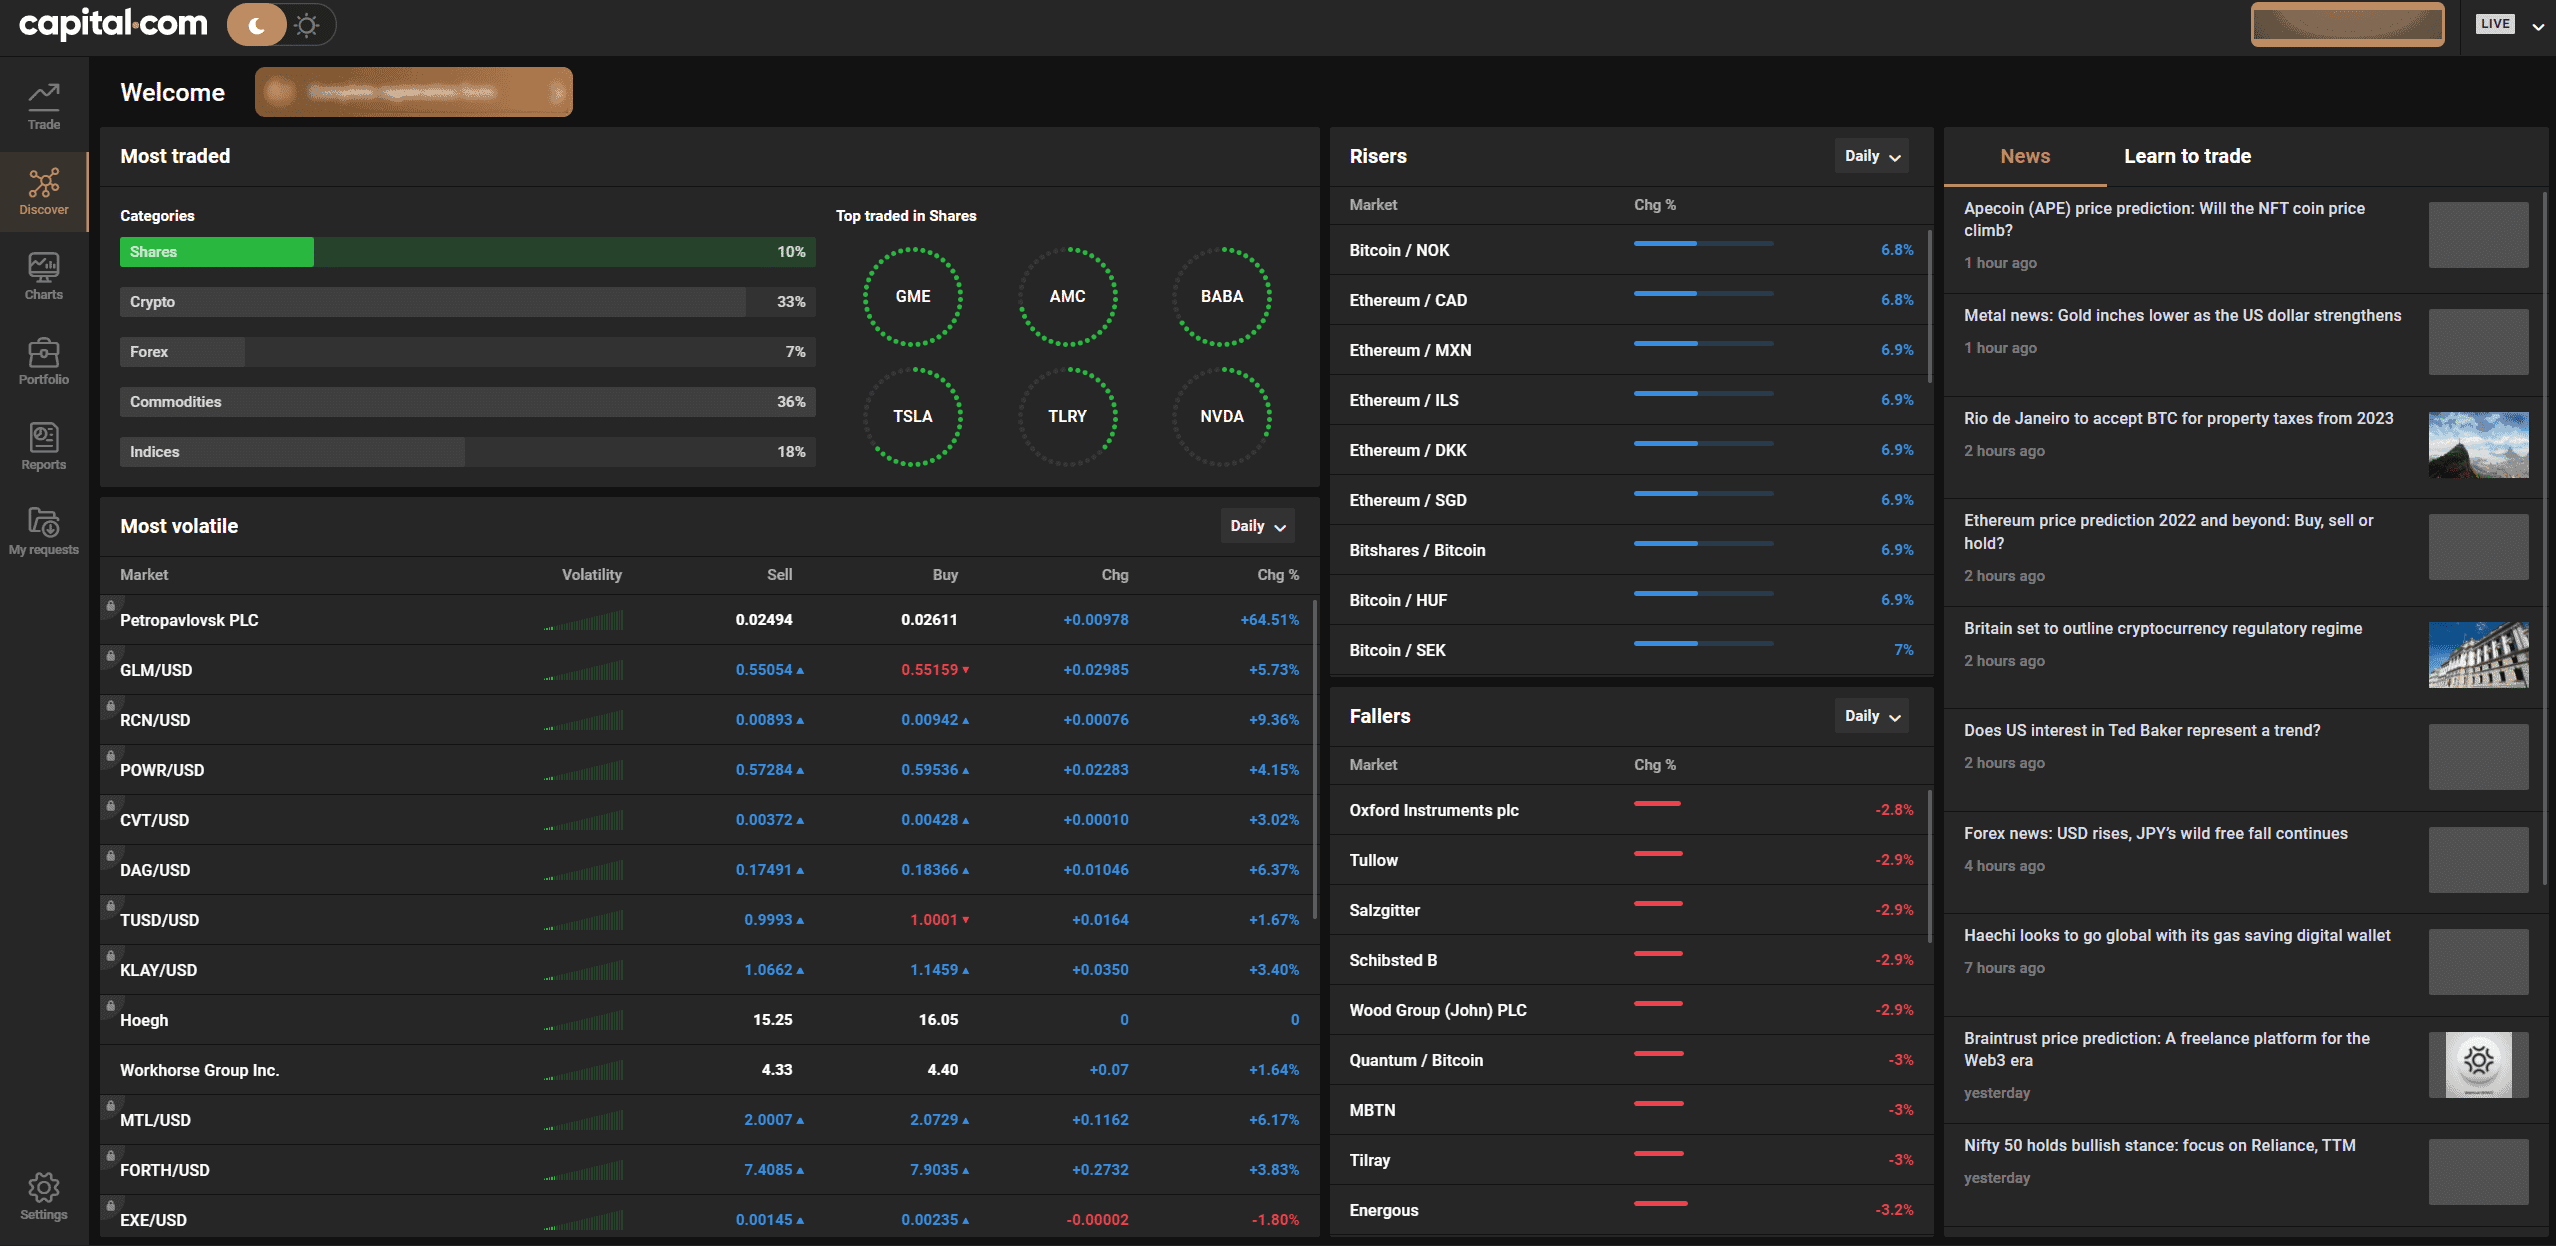 Capital.com trading platform dashboard